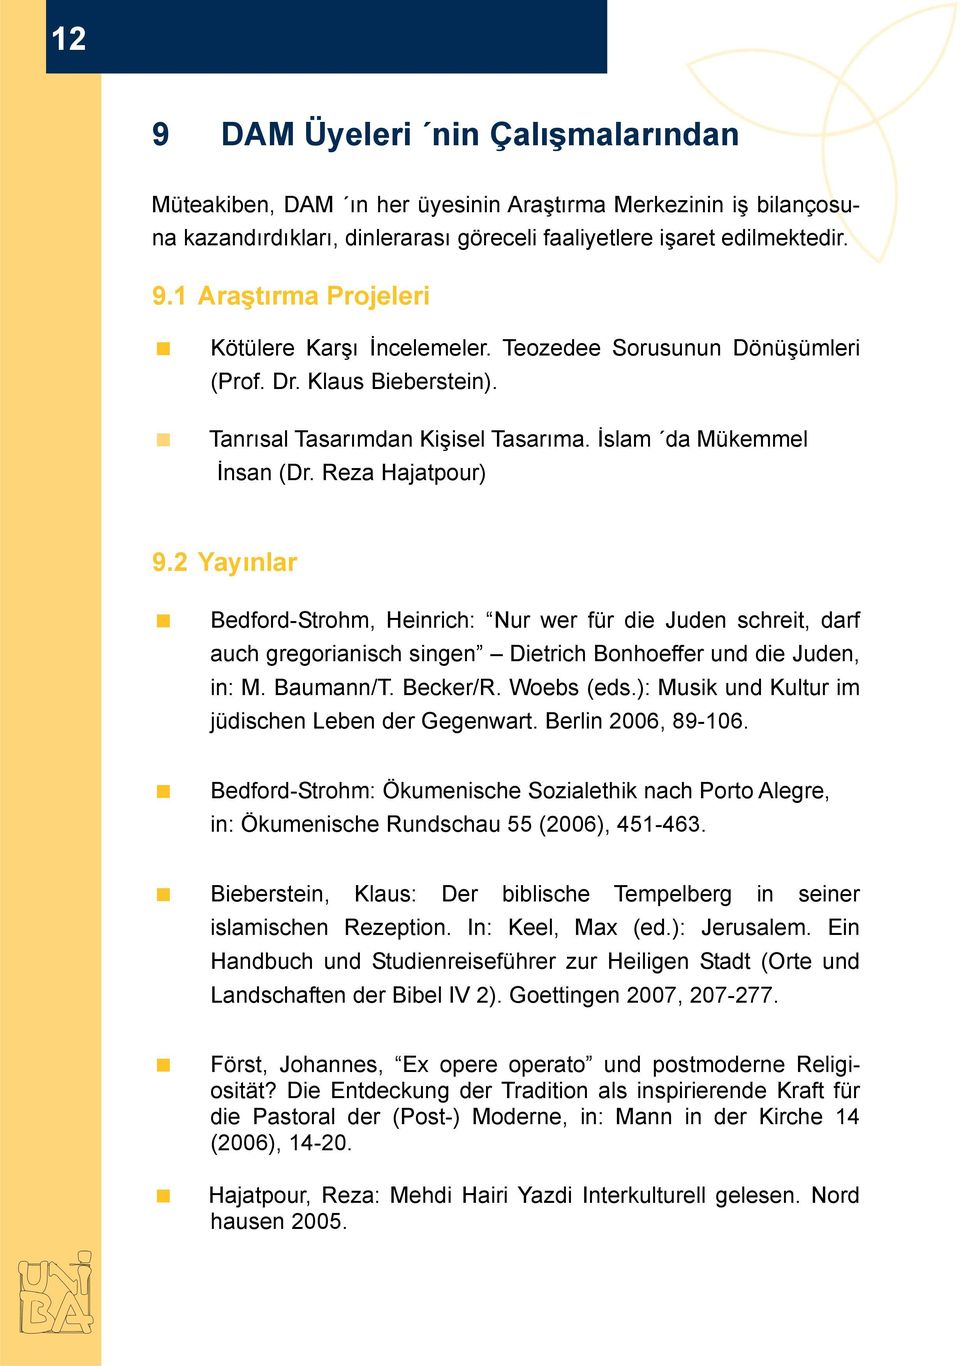 2 Yayınlar Bedford-Strohm, Heinrich: Nur wer für die Juden schreit, darf auch gregorianisch singen Dietrich Bonhoeffer und die Juden, in: M. Baumann/T. Becker/R. Woebs (eds.